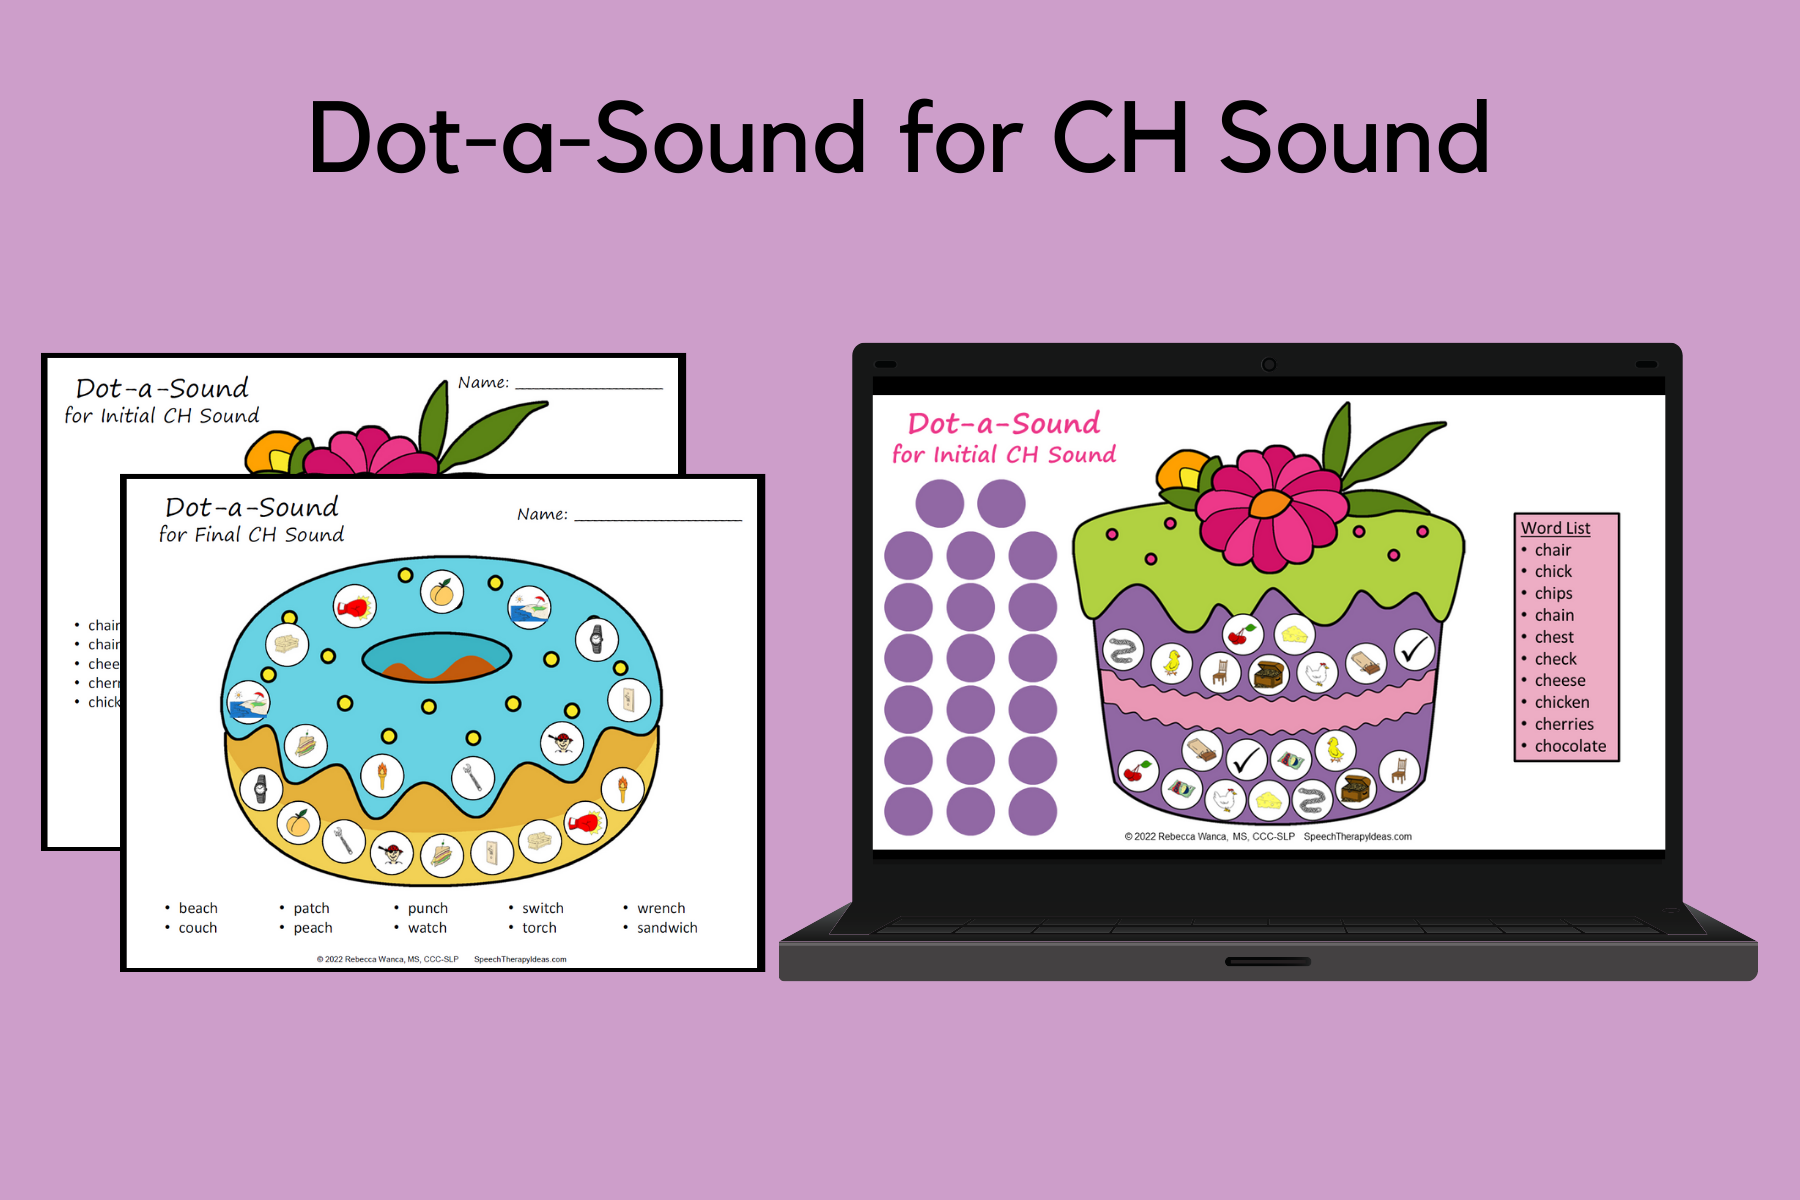 Dot-a-Sound for CH Sound